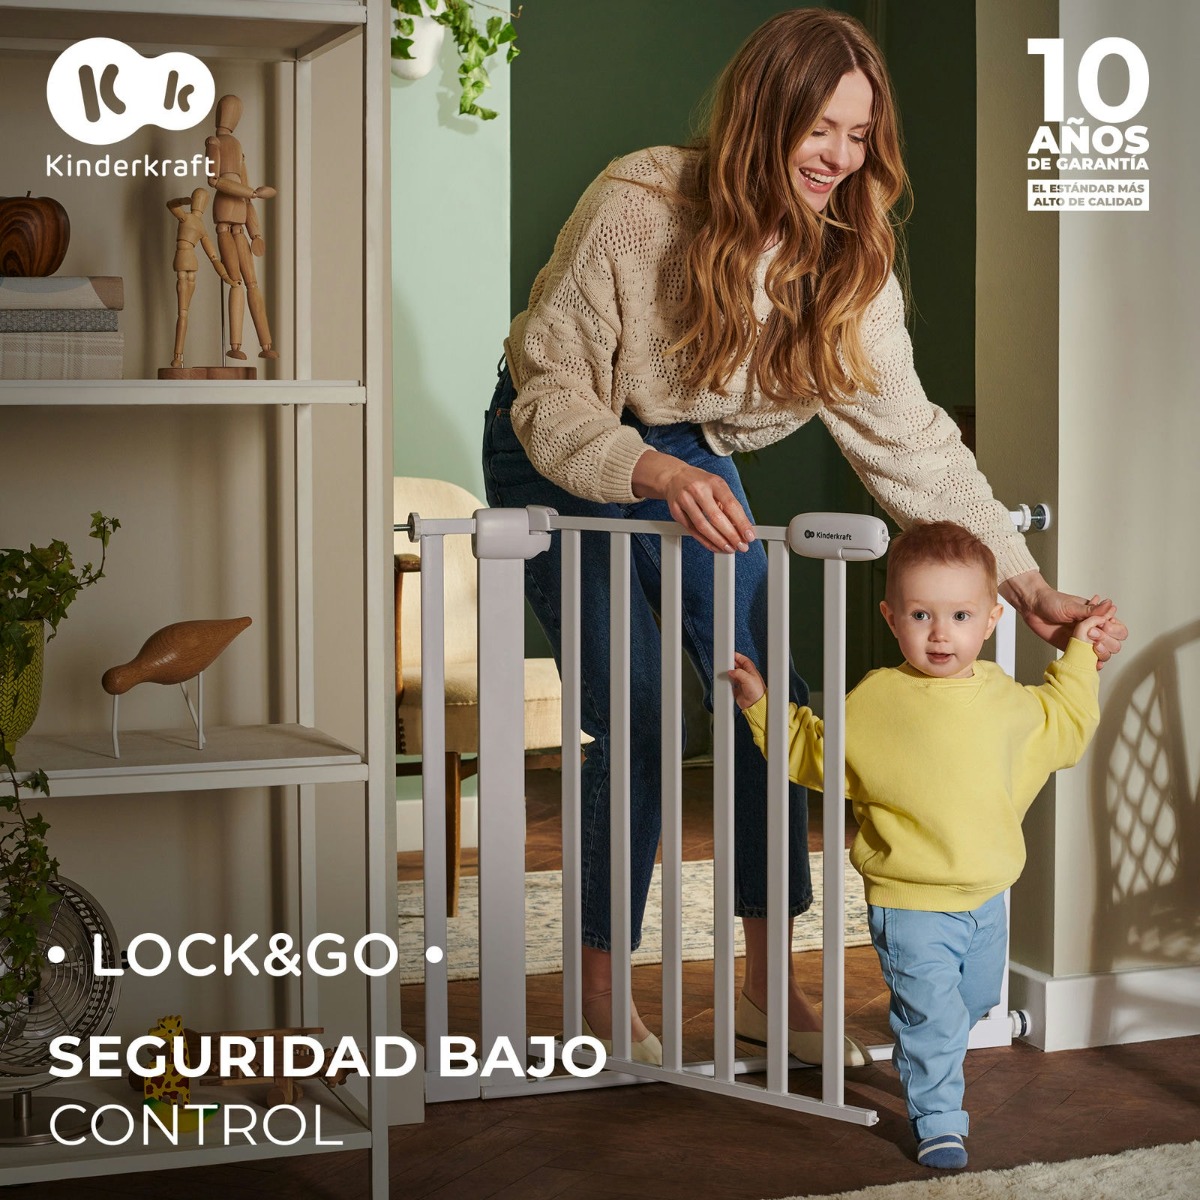 2ES-KK-lock-go-blanco-seguridad-control